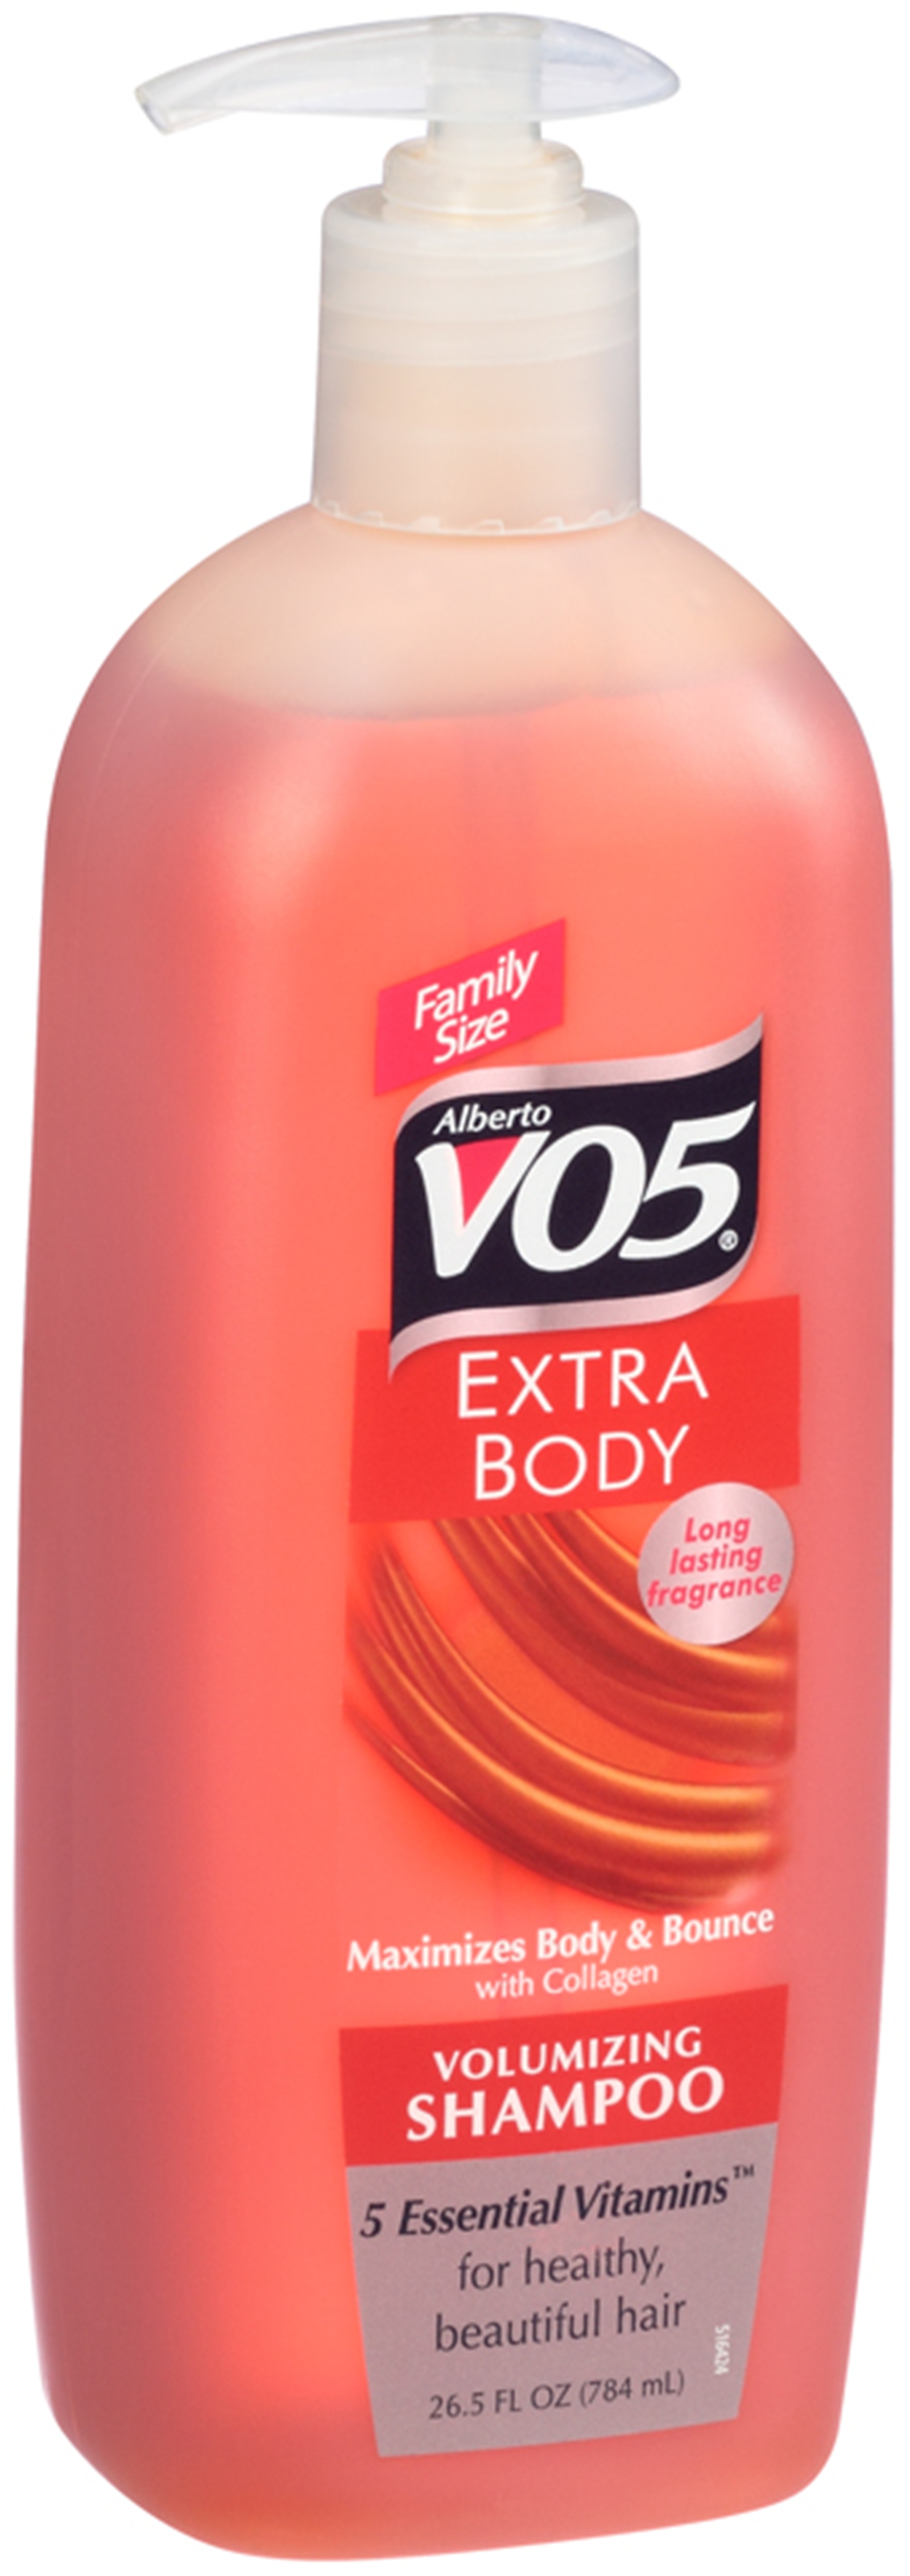 VO5 Extra Body Volumizing Shampoo, 26.5 fl. oz. Bottle